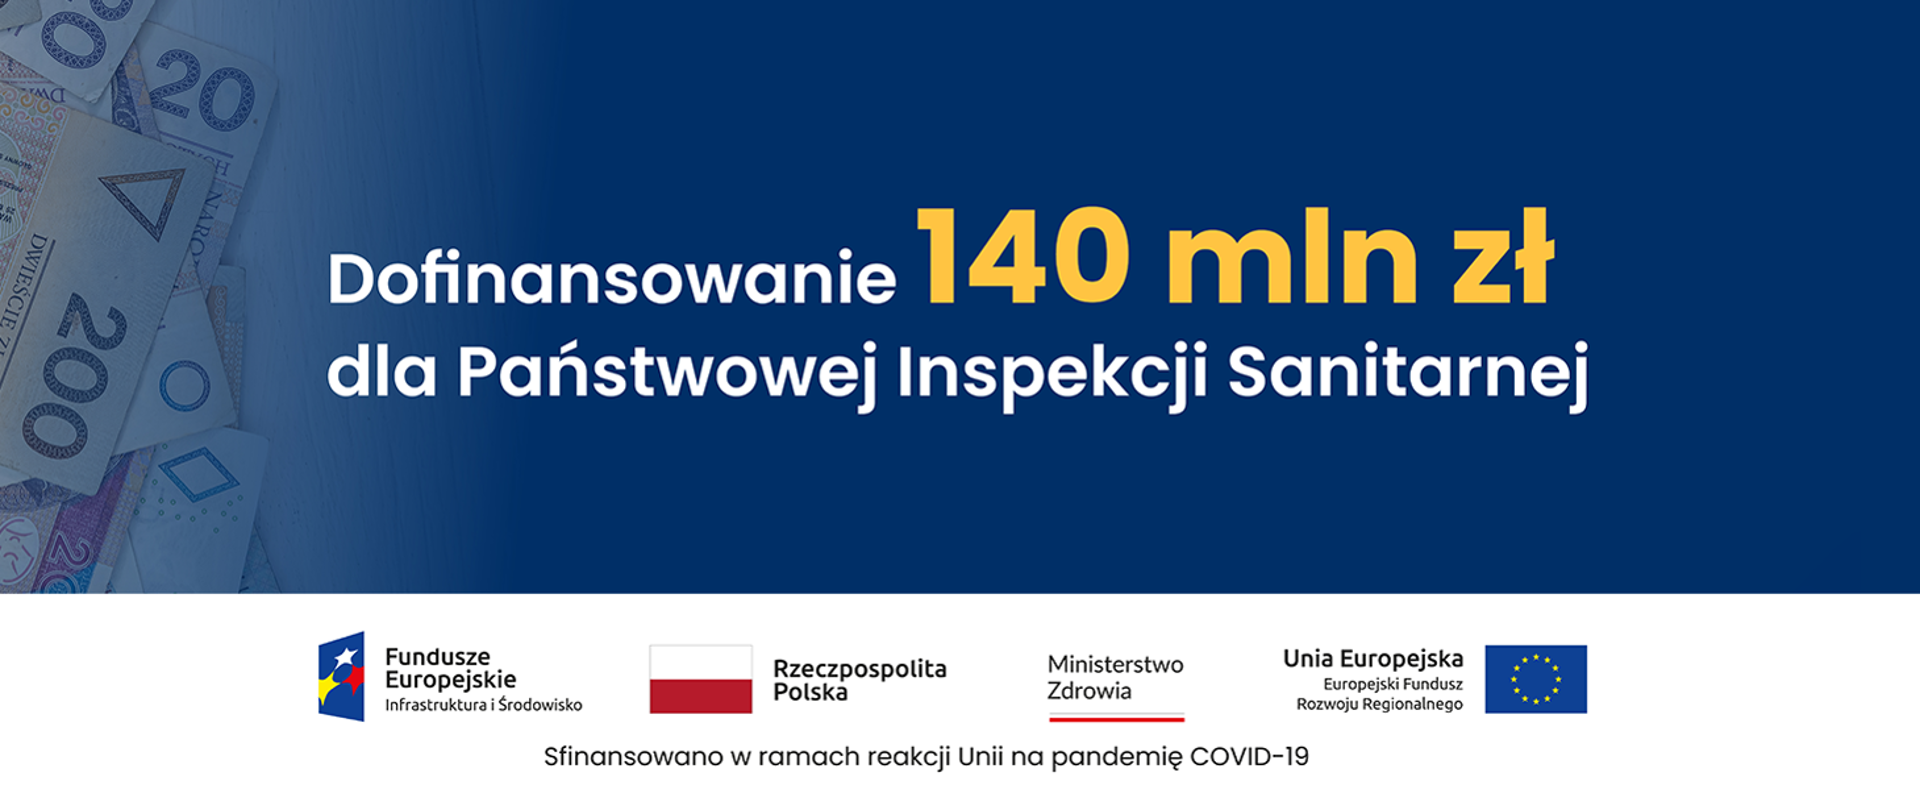 Dofinansowanie 140 mln zł dla Państwowej Inspekcji Sanitarnej